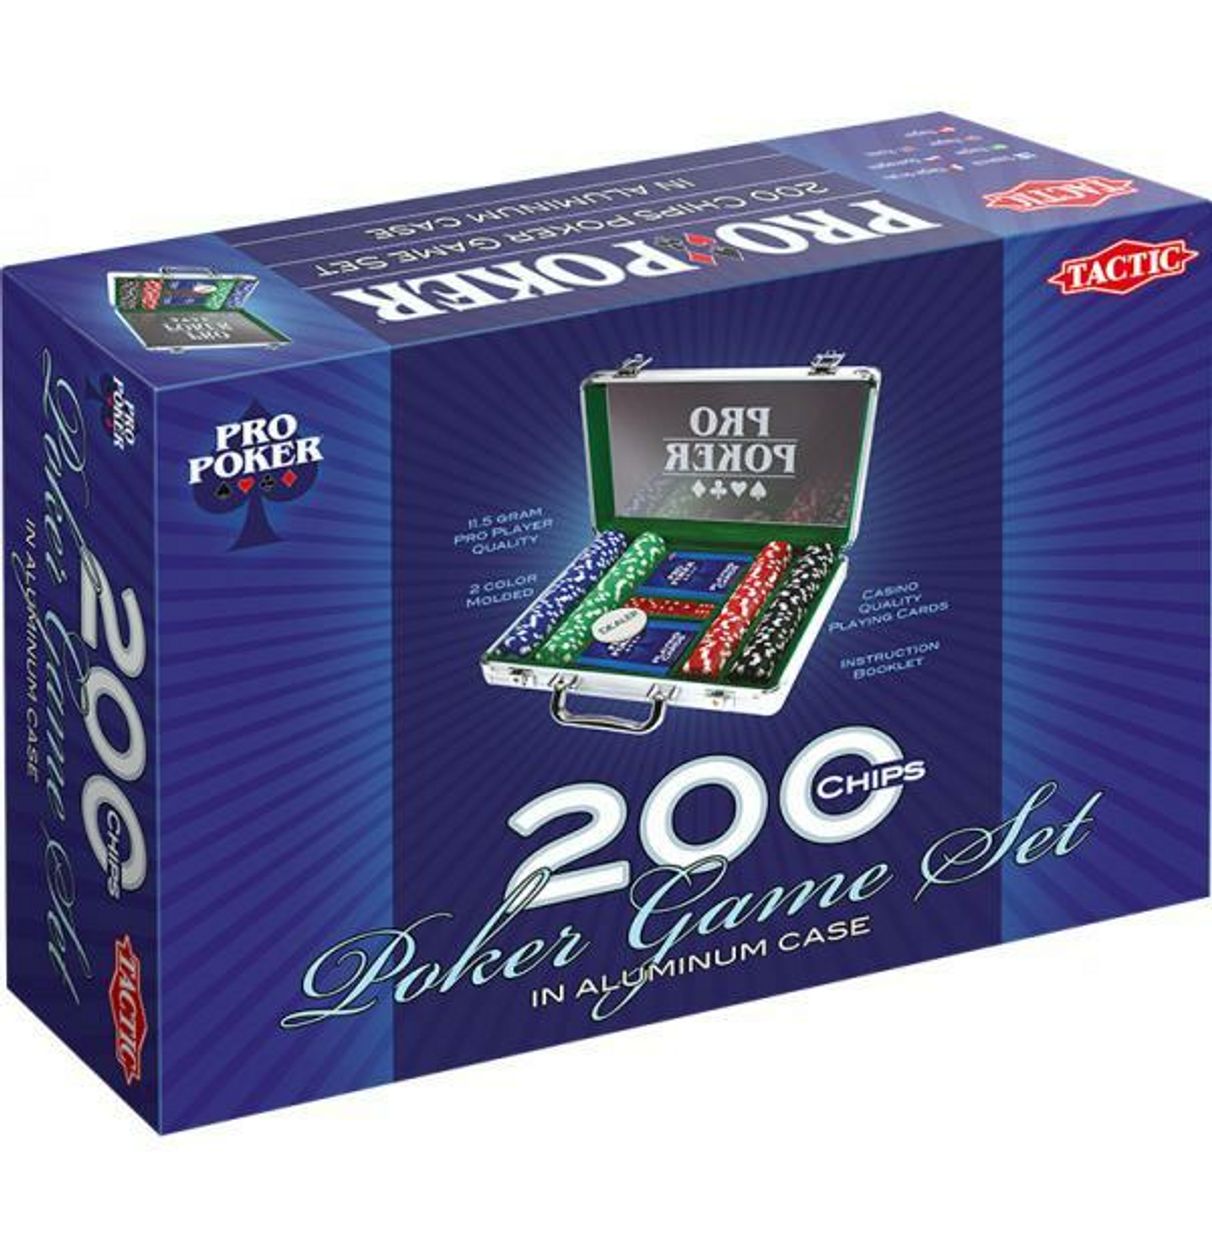 Pro Poker case 200 chips